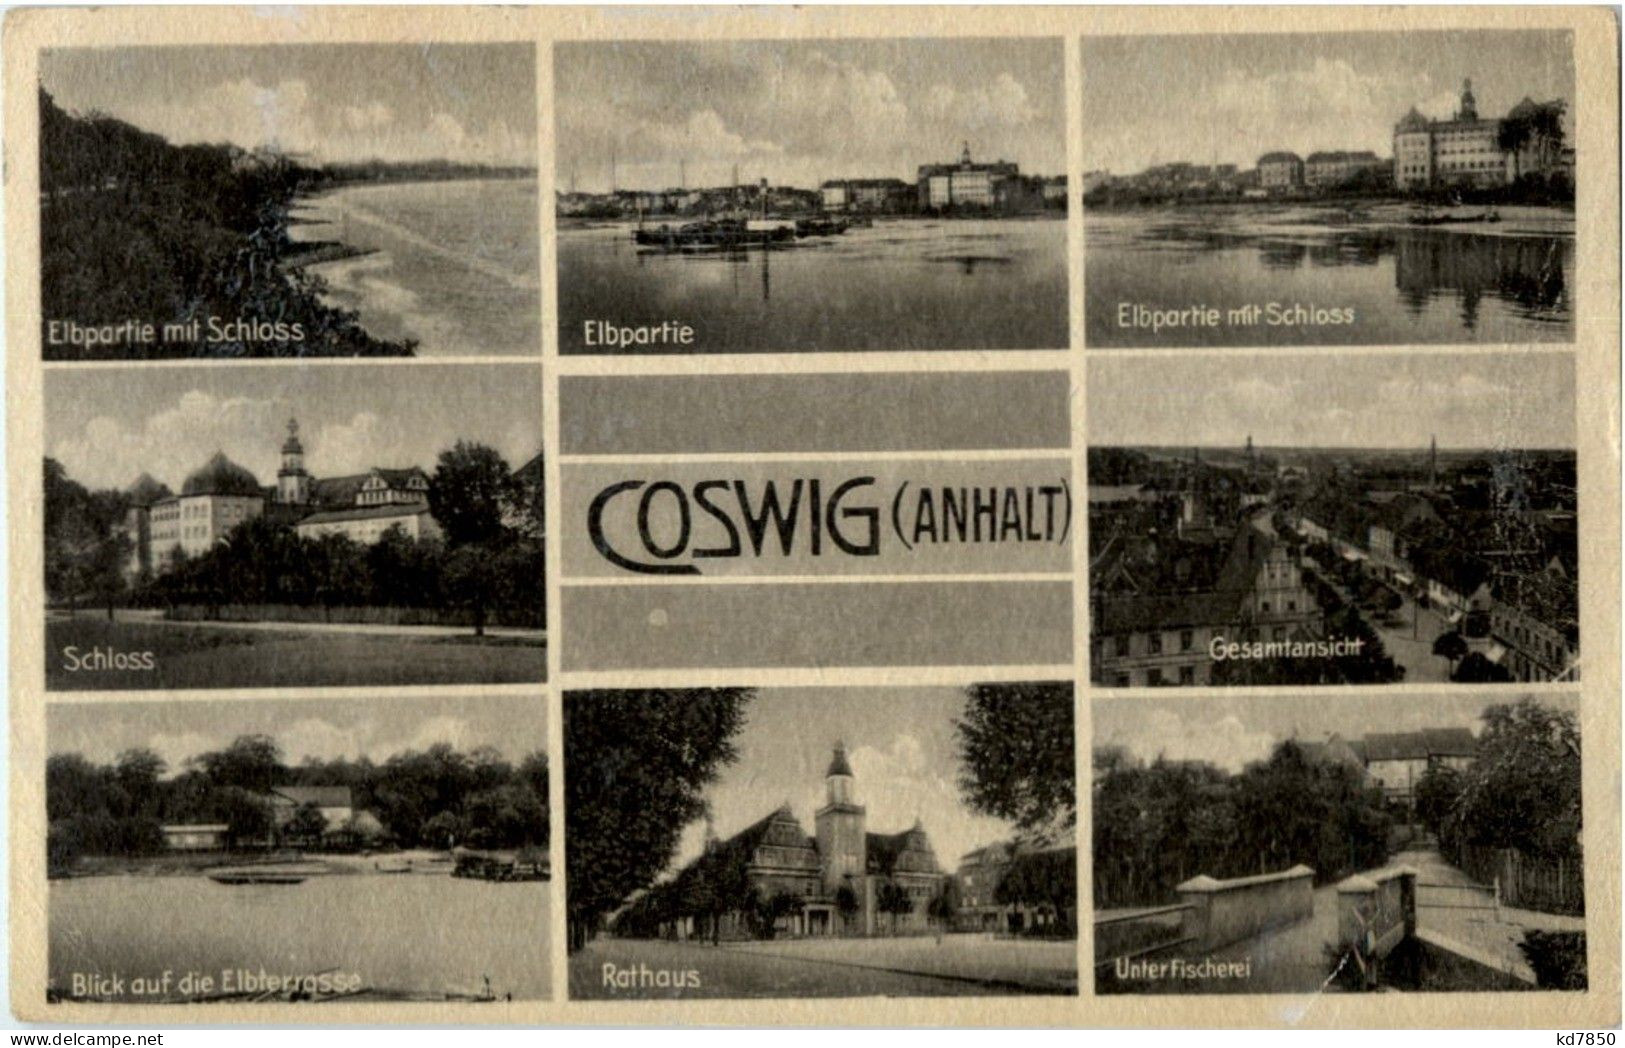 Coswig - Coswig